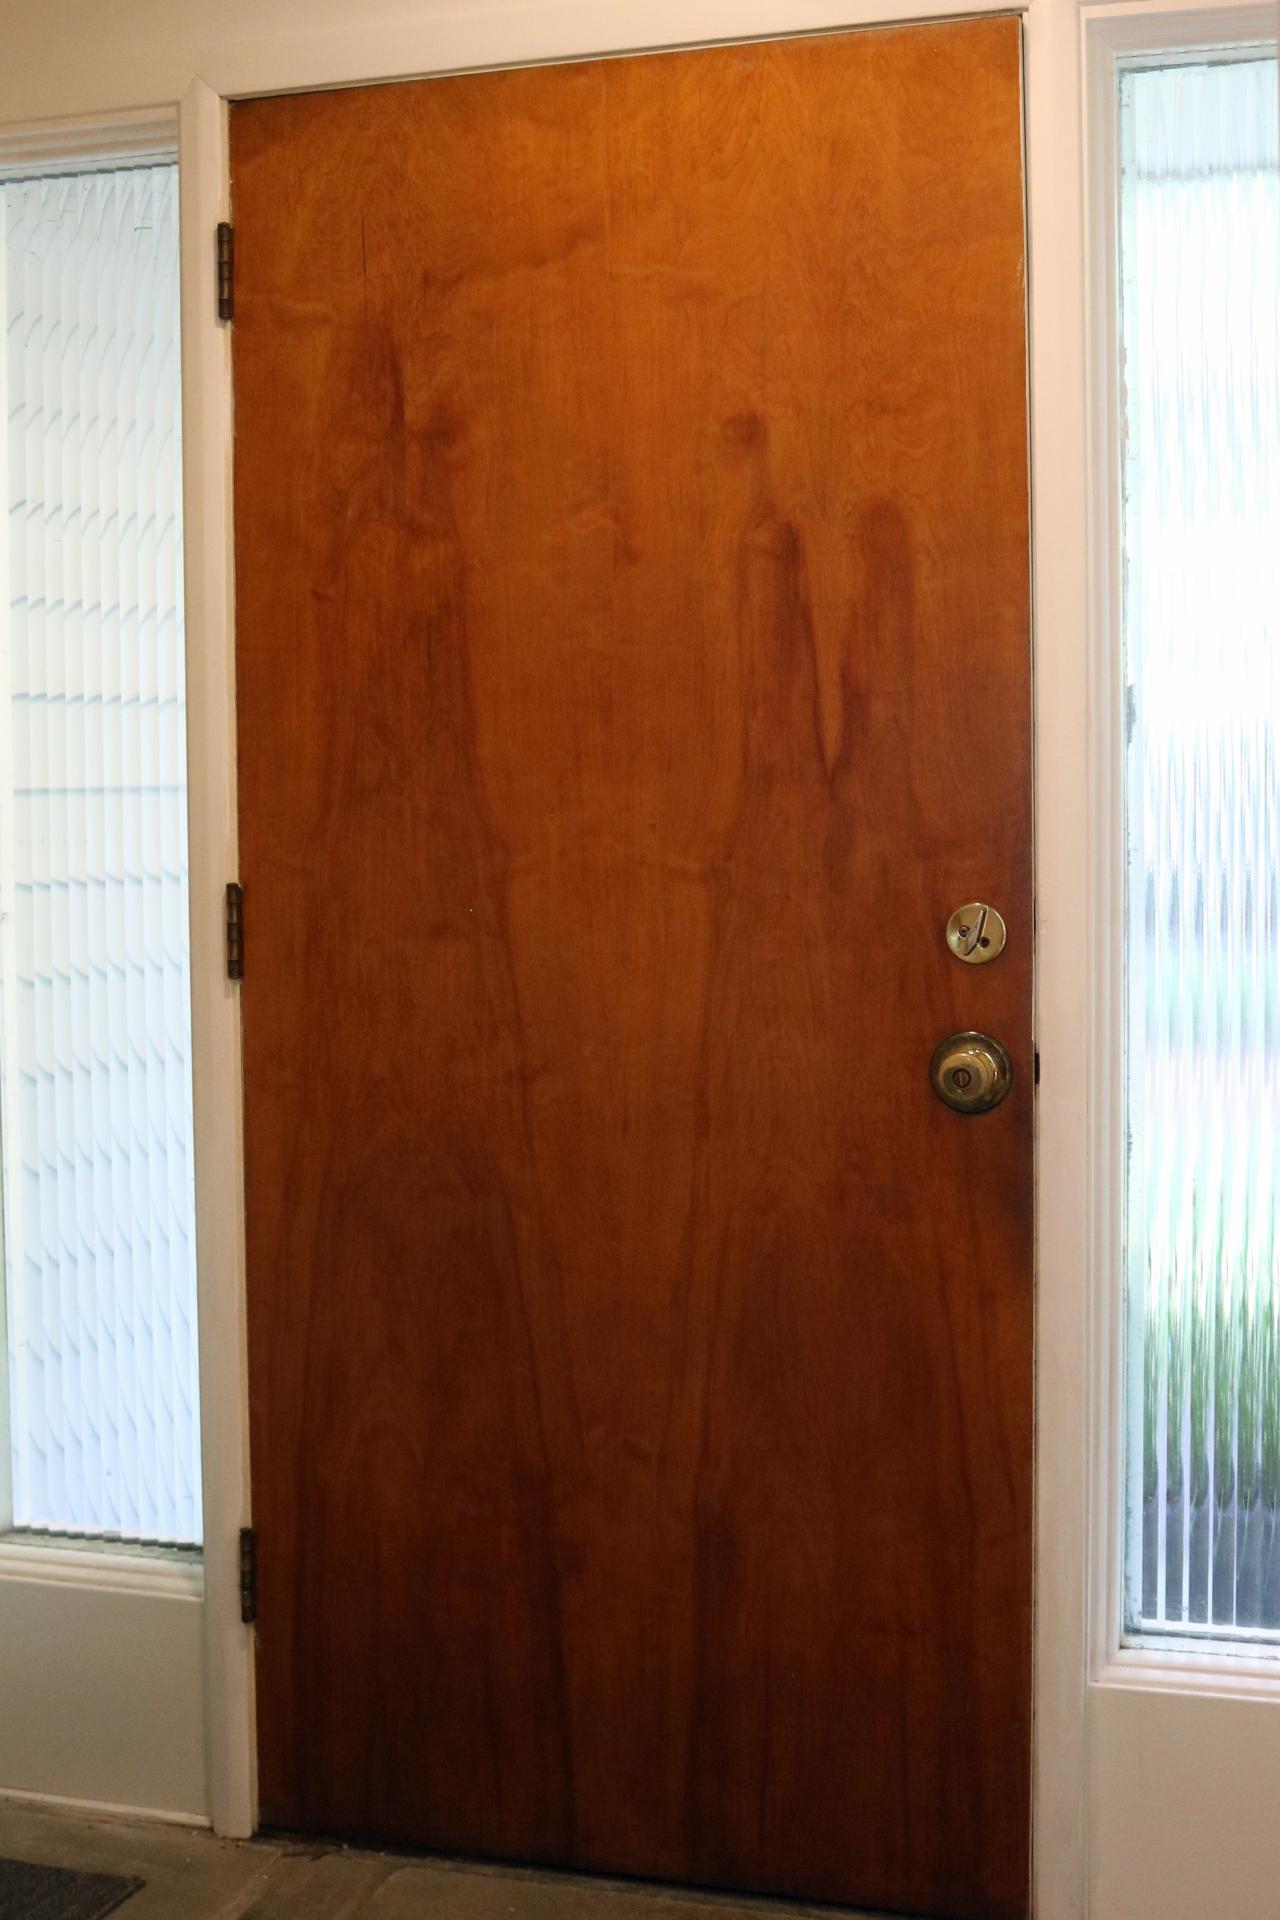 wallpaper on interior doors,door,property,wood,wood stain,room